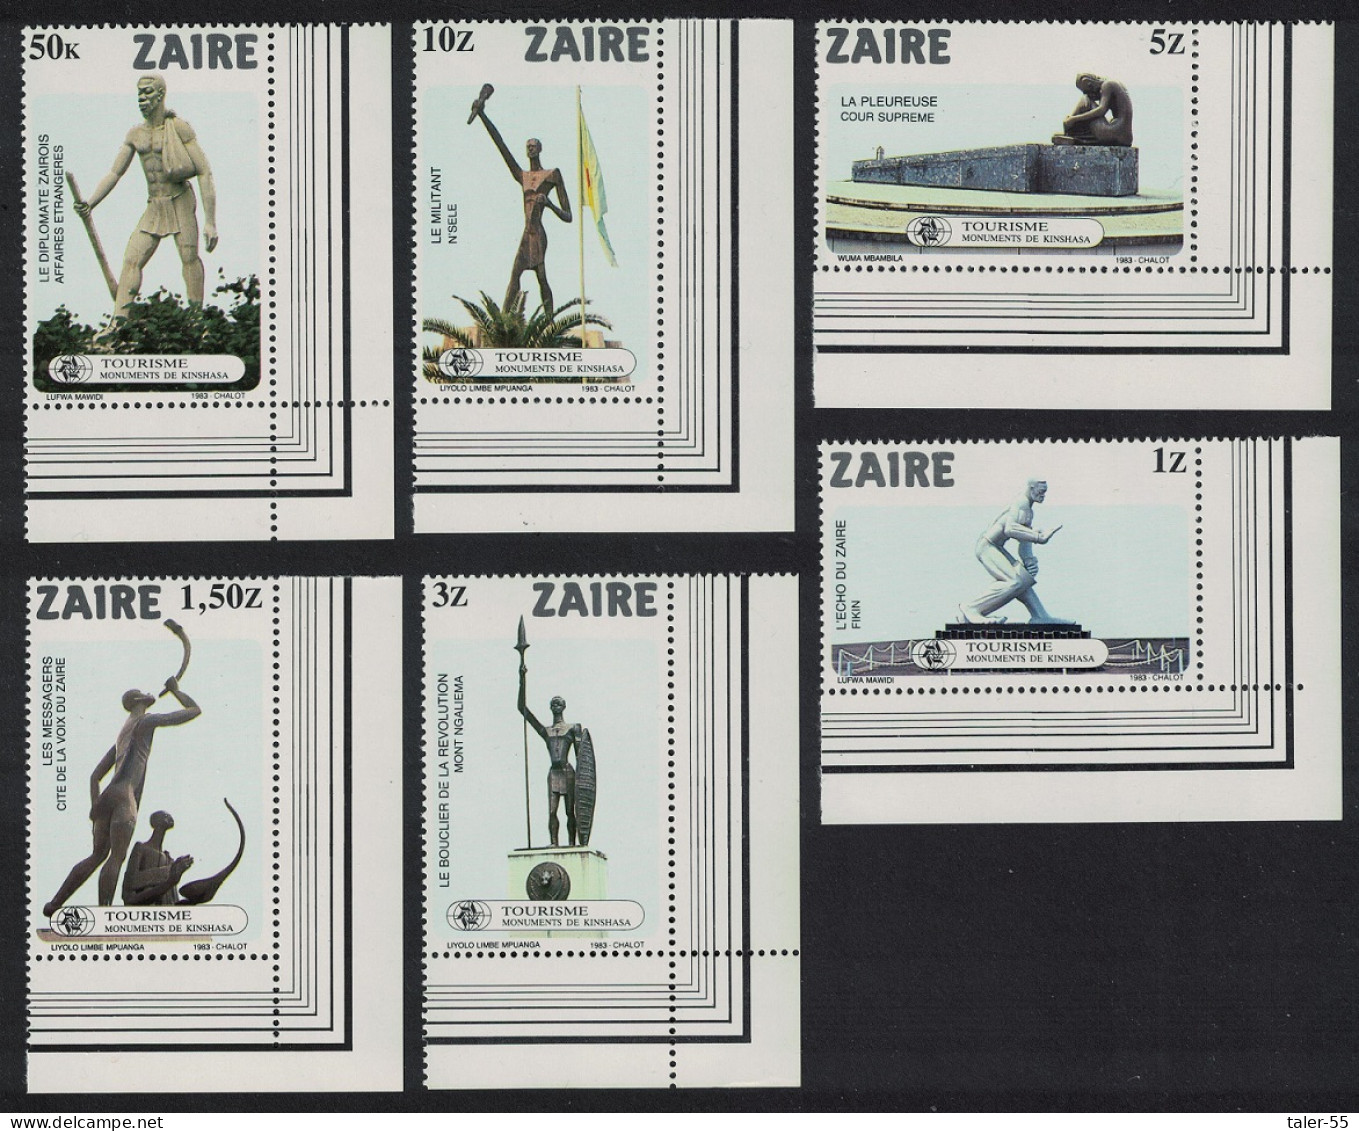 Zaire Kinshasa Monuments 6v Corners 1983 MNH SG#1157-1162 Sc#1115-1120 - Ungebraucht